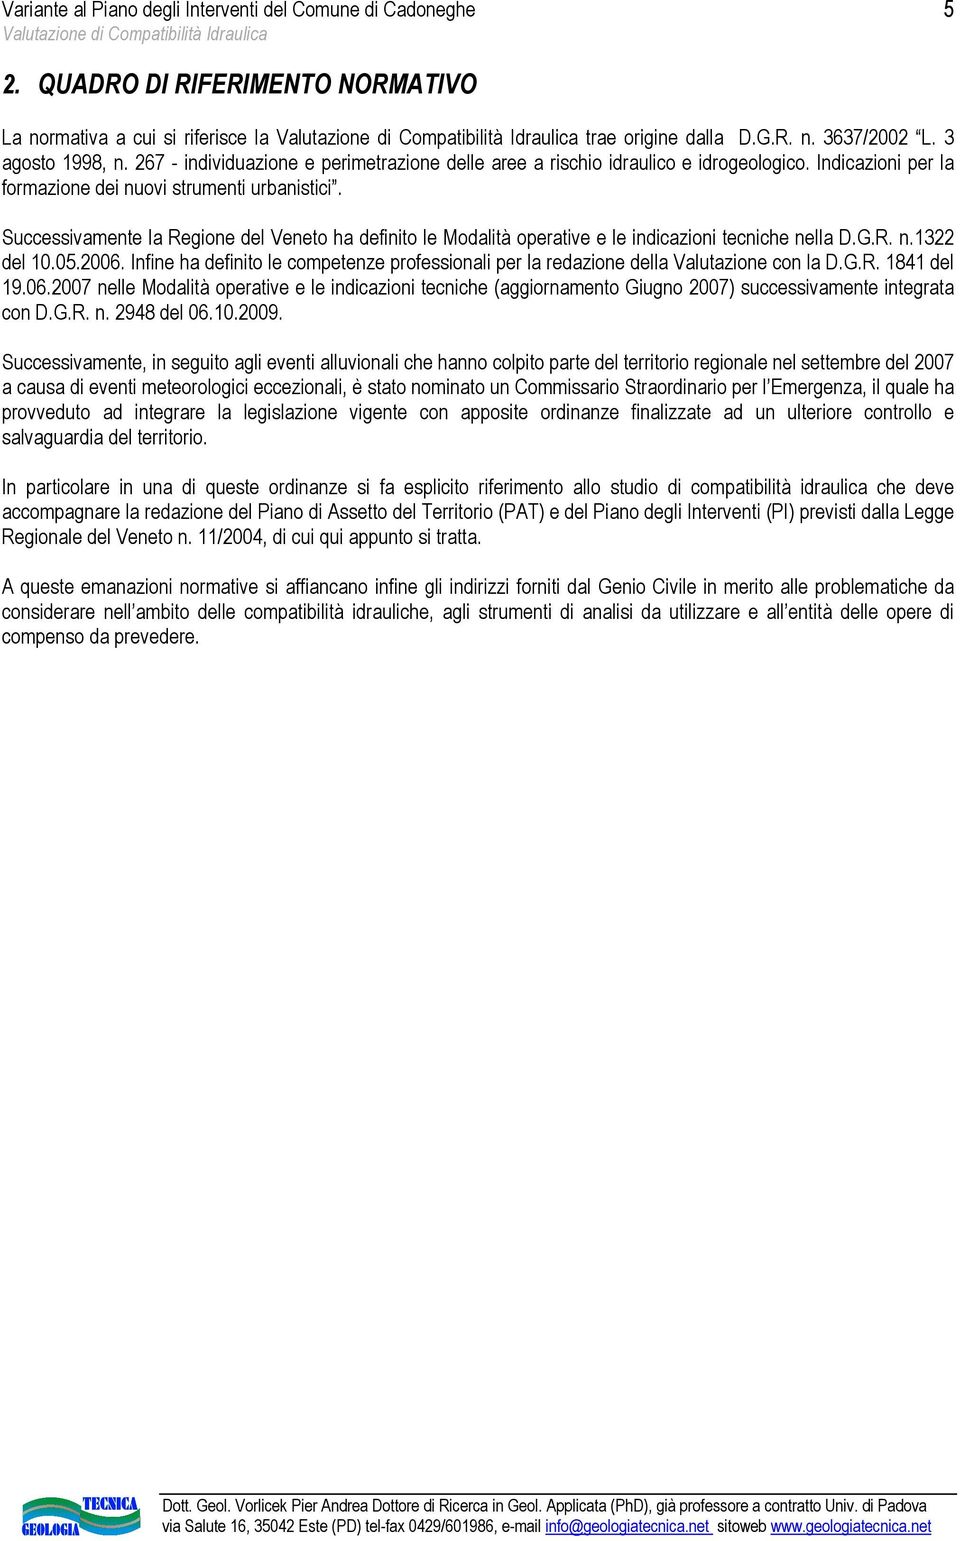 Successivamente la Regione del Veneto ha definito le Modalità operative e le indicazioni tecniche nella D.G.R. n.1322 del 10.05.2006.